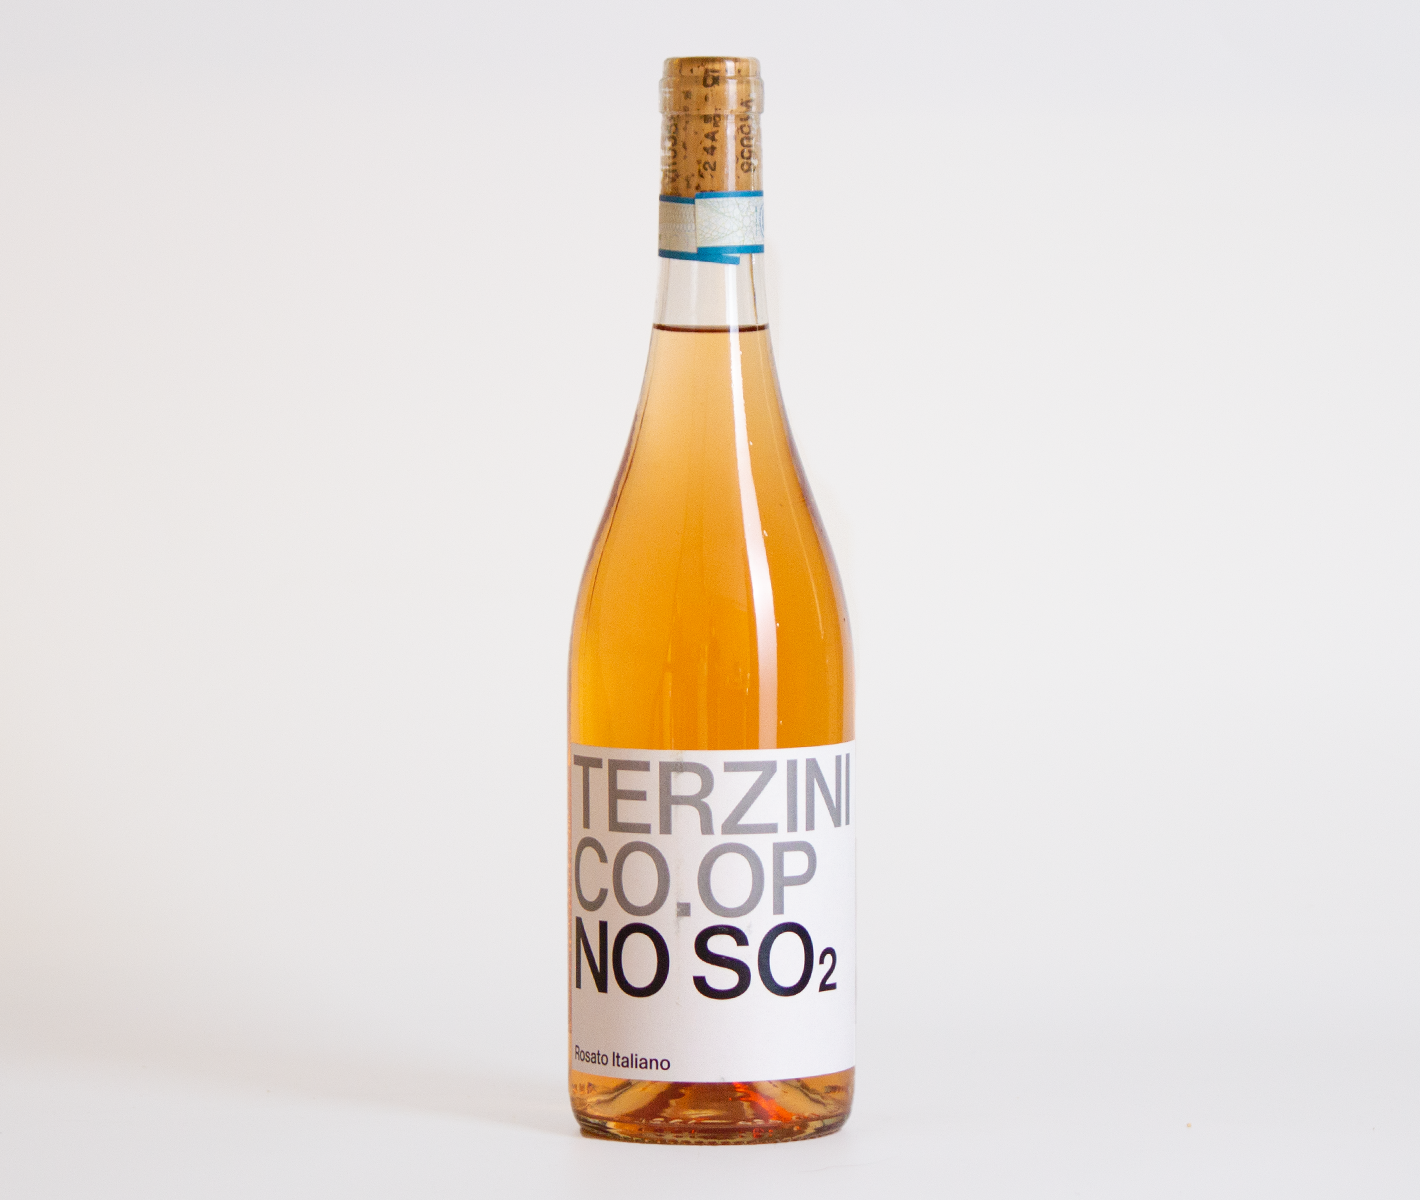 2022 Terzini Co.Op No S02